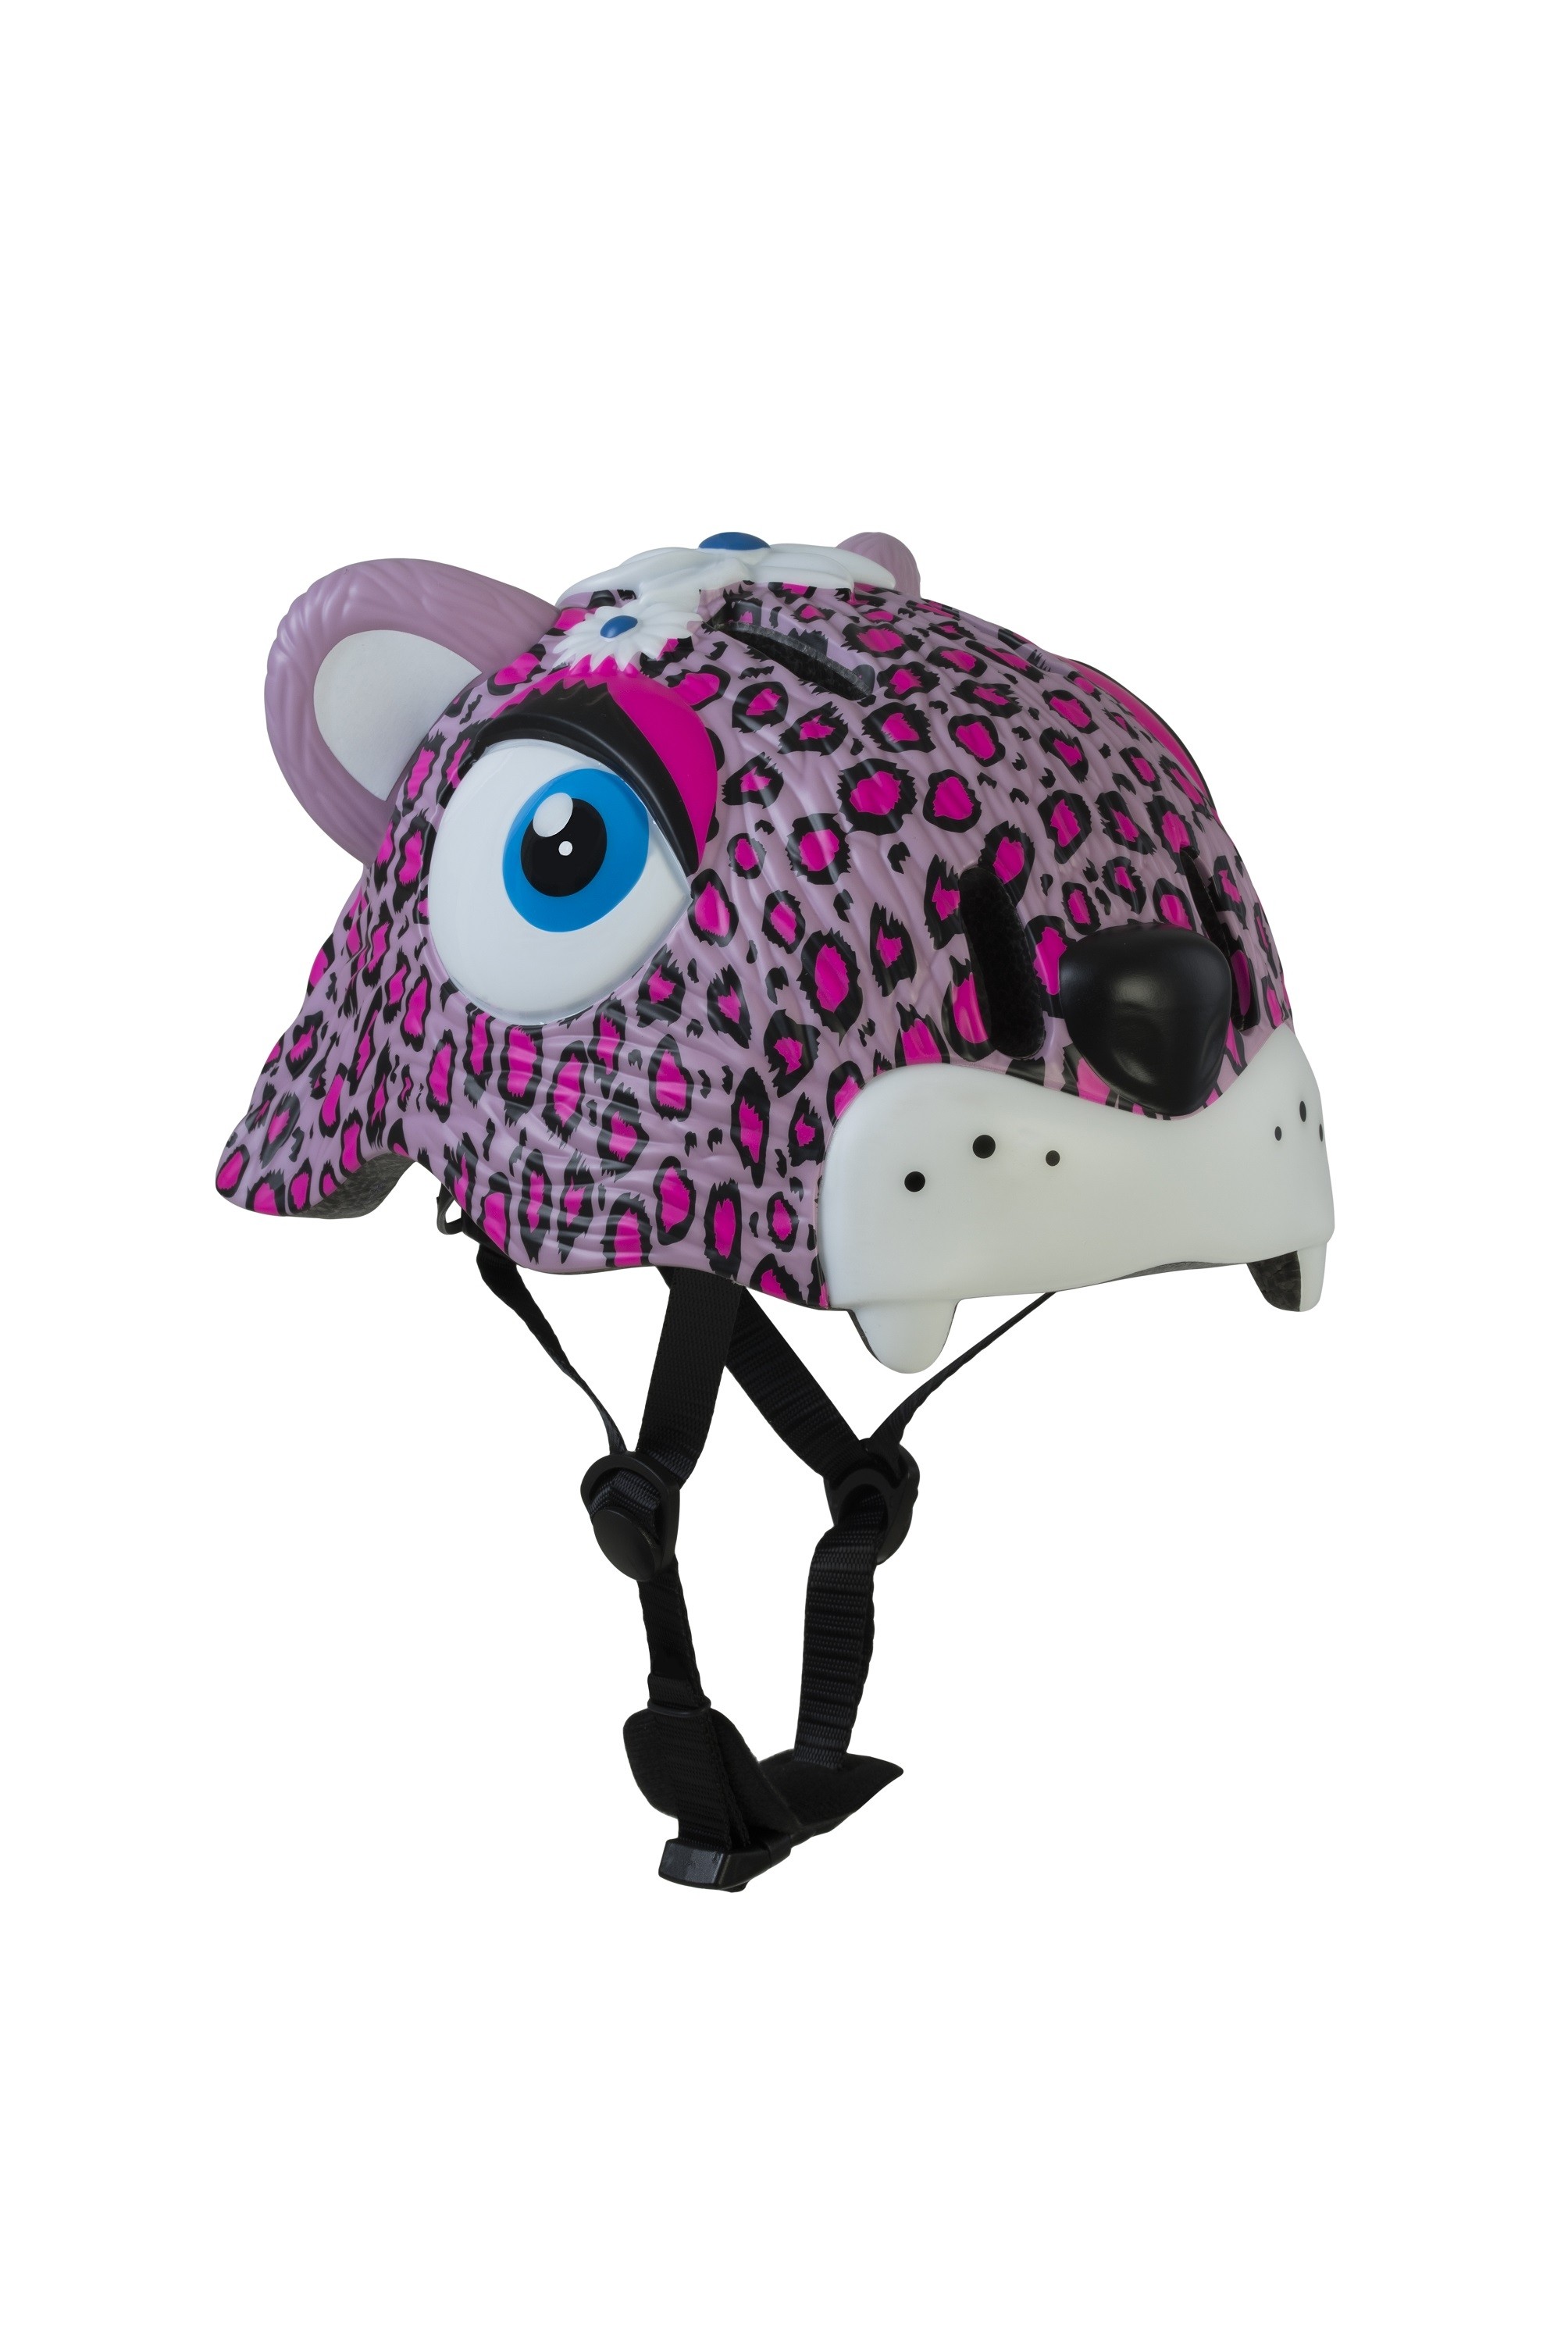 Crazy Safety Kinderhelm Leopard pink 49-55cm Kopfumfang Led-Licht